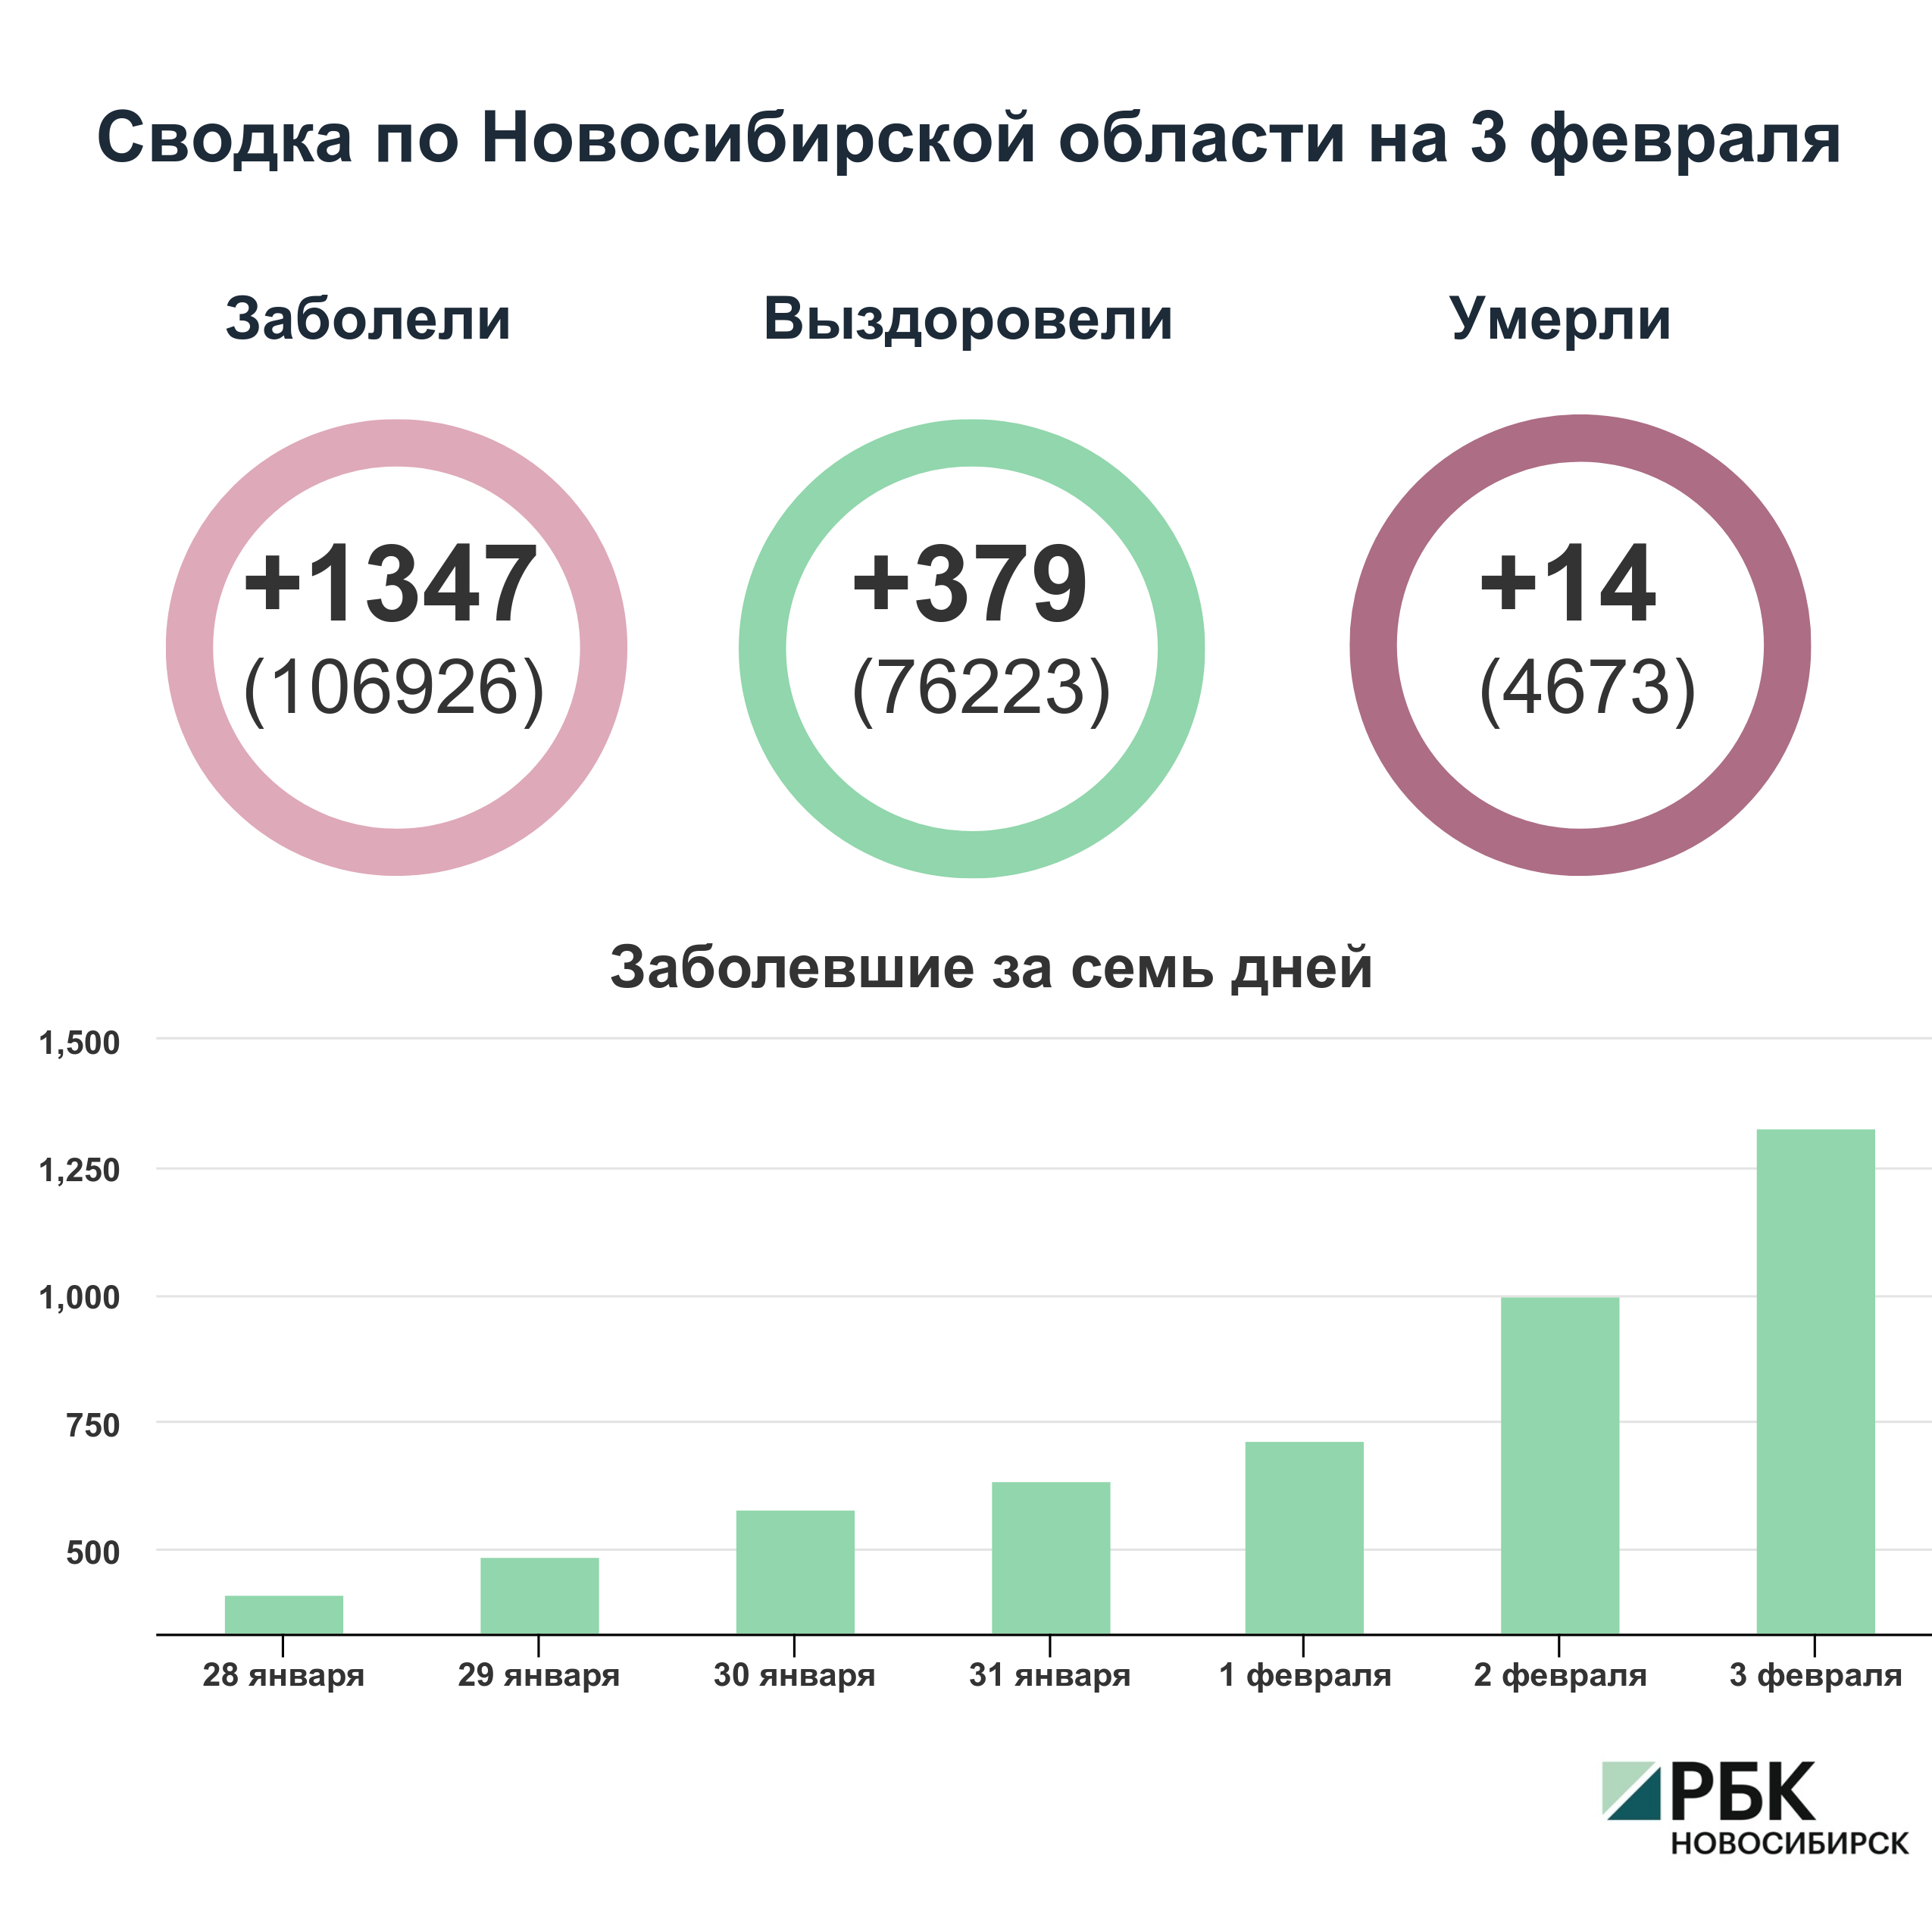 Коронавирус в Новосибирске: сводка на 3 февраля